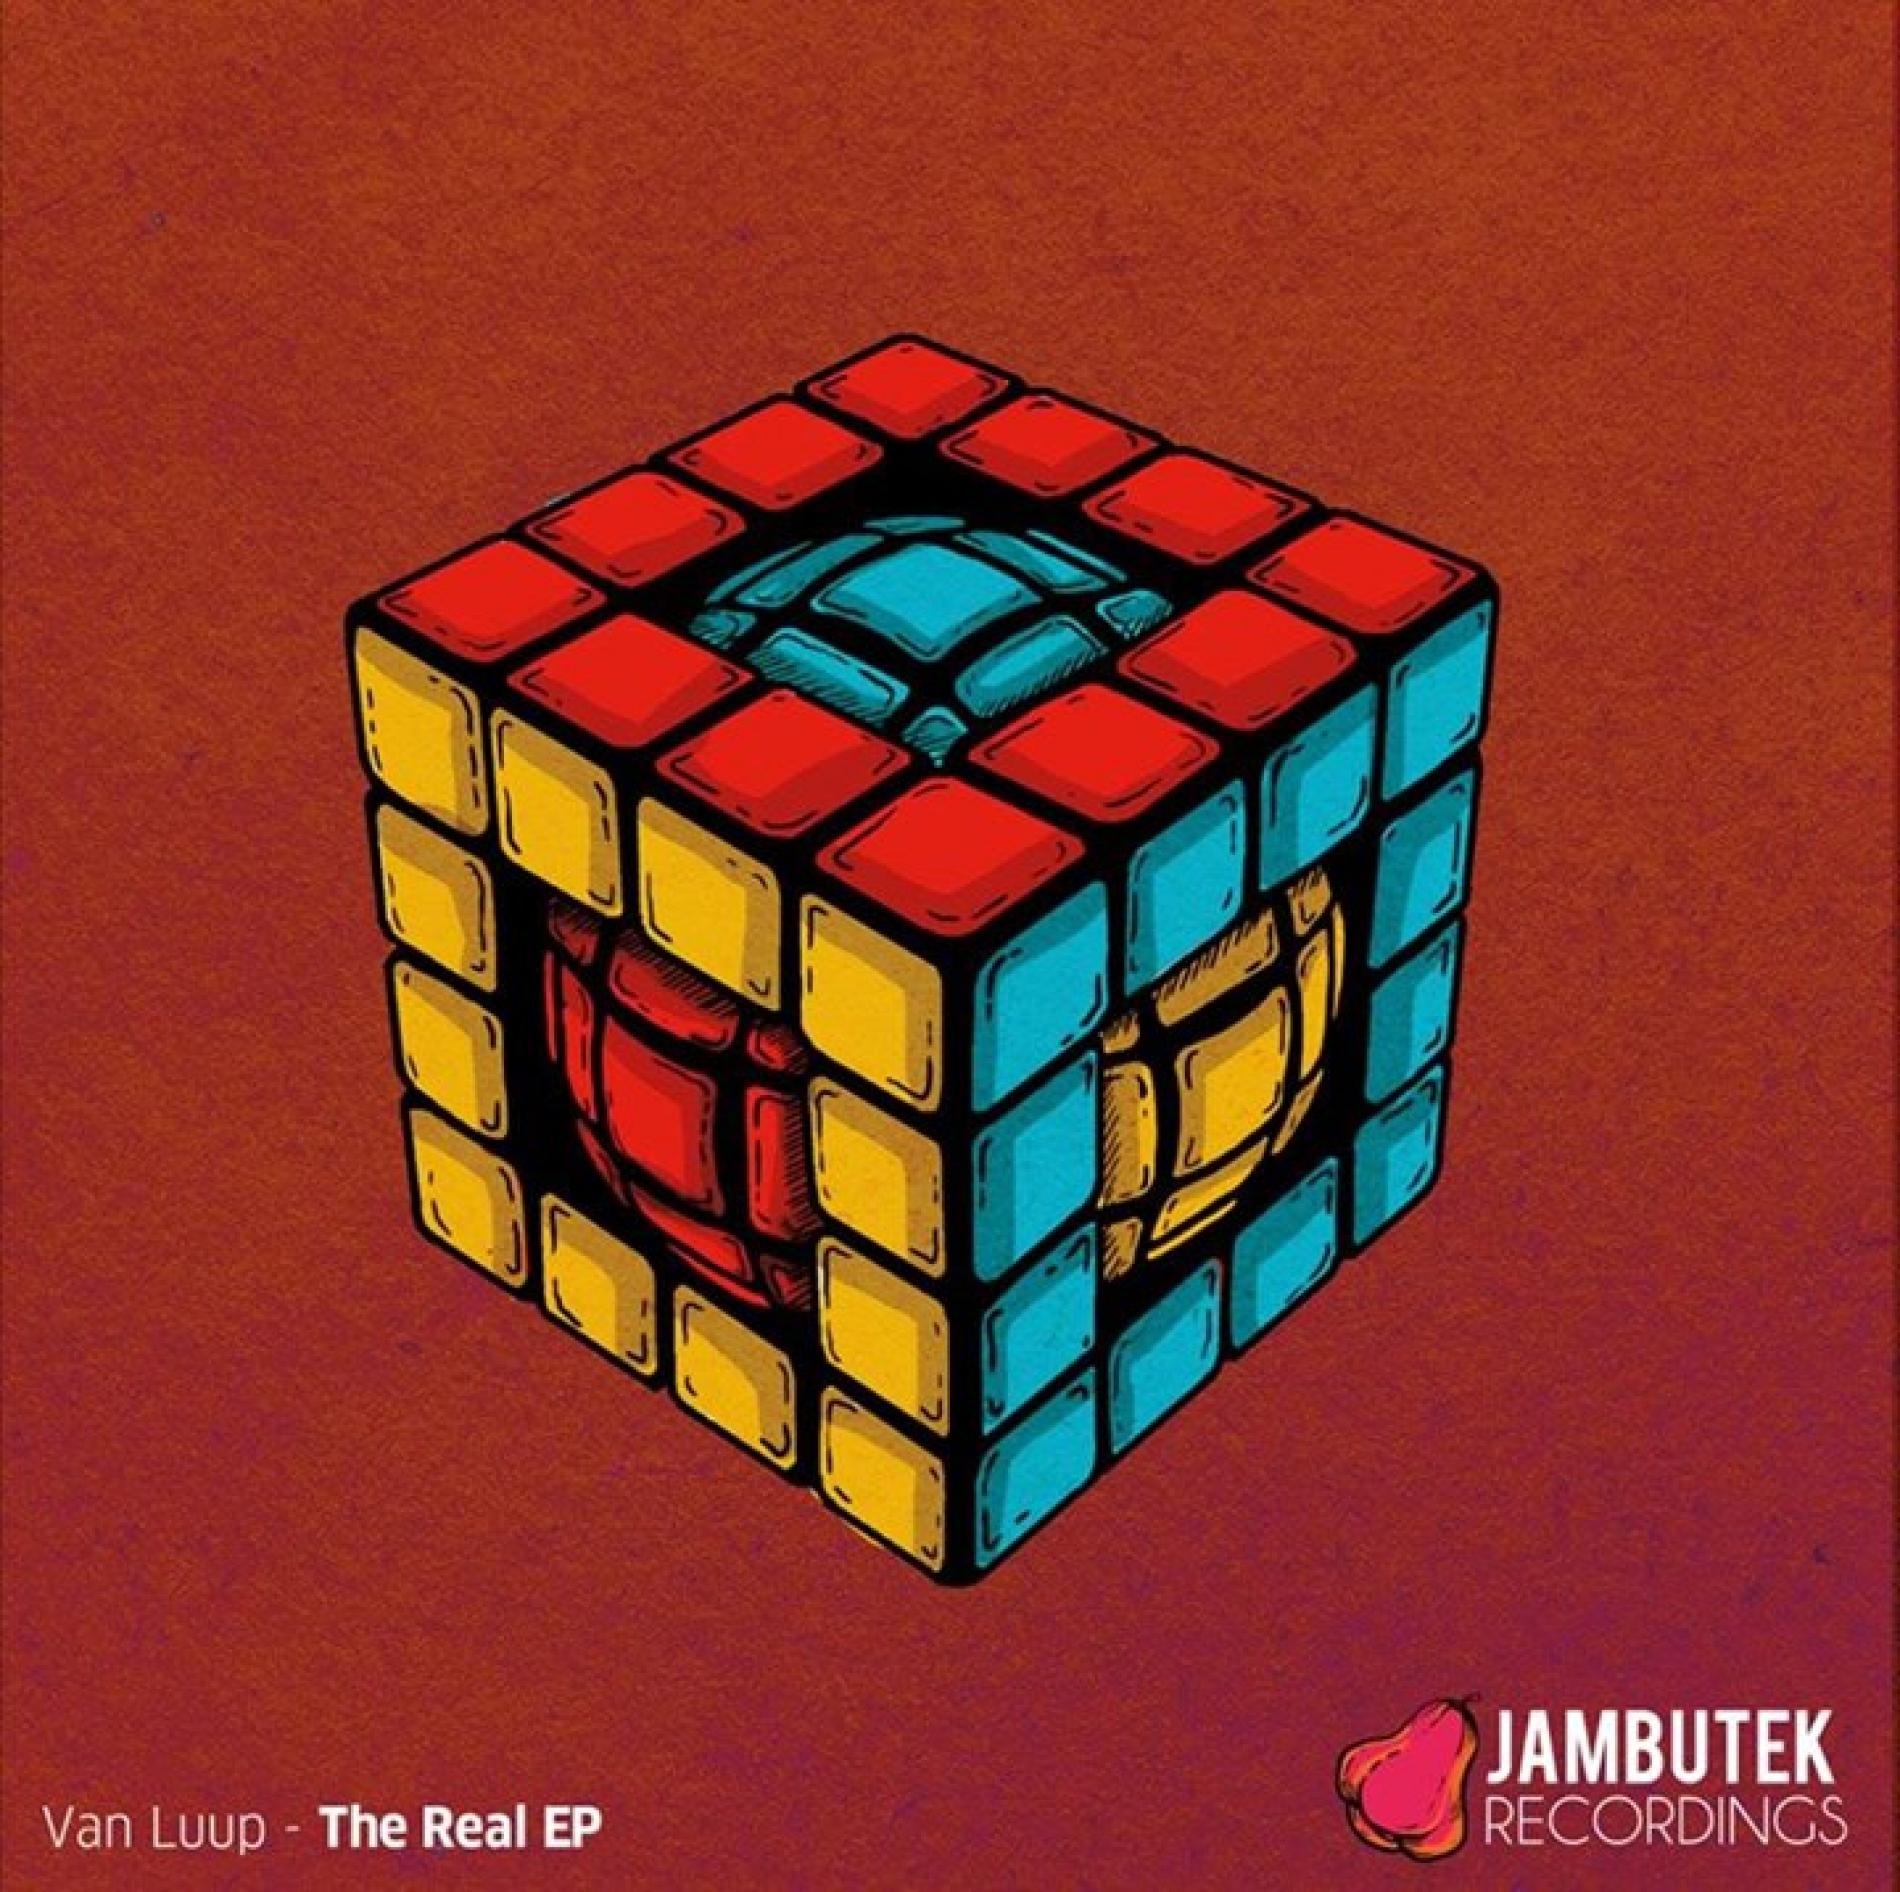 Van Luup: The Real EP